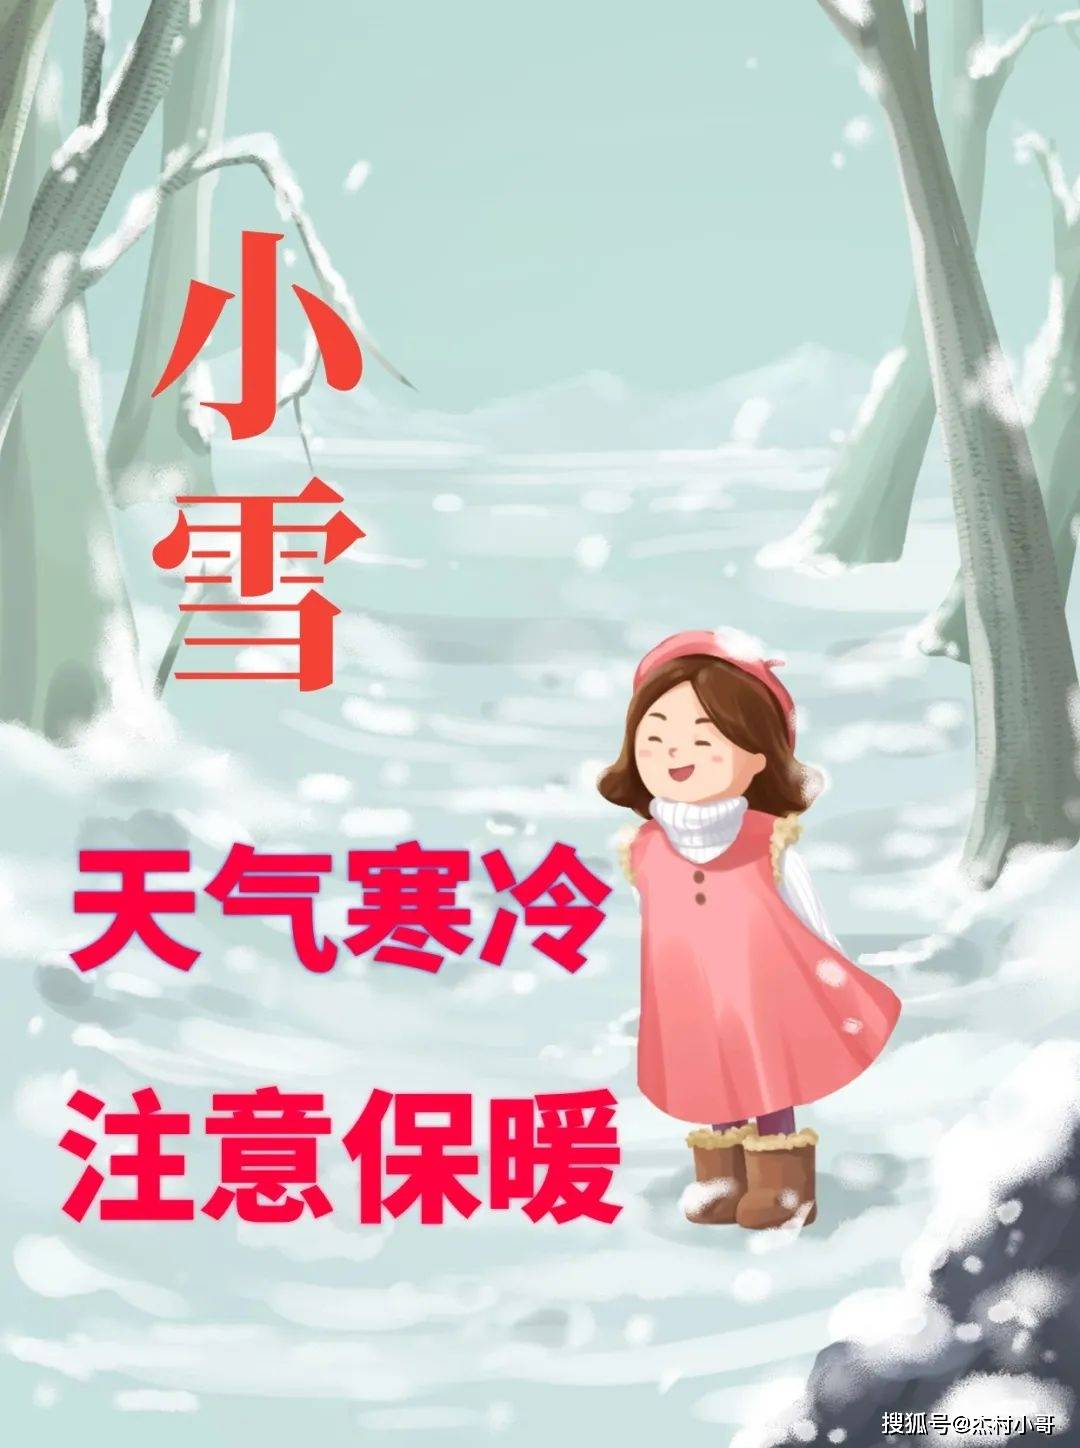 11月22日 最新小雪你好图文祝福配图 适合小雪节气发的问候祝福词